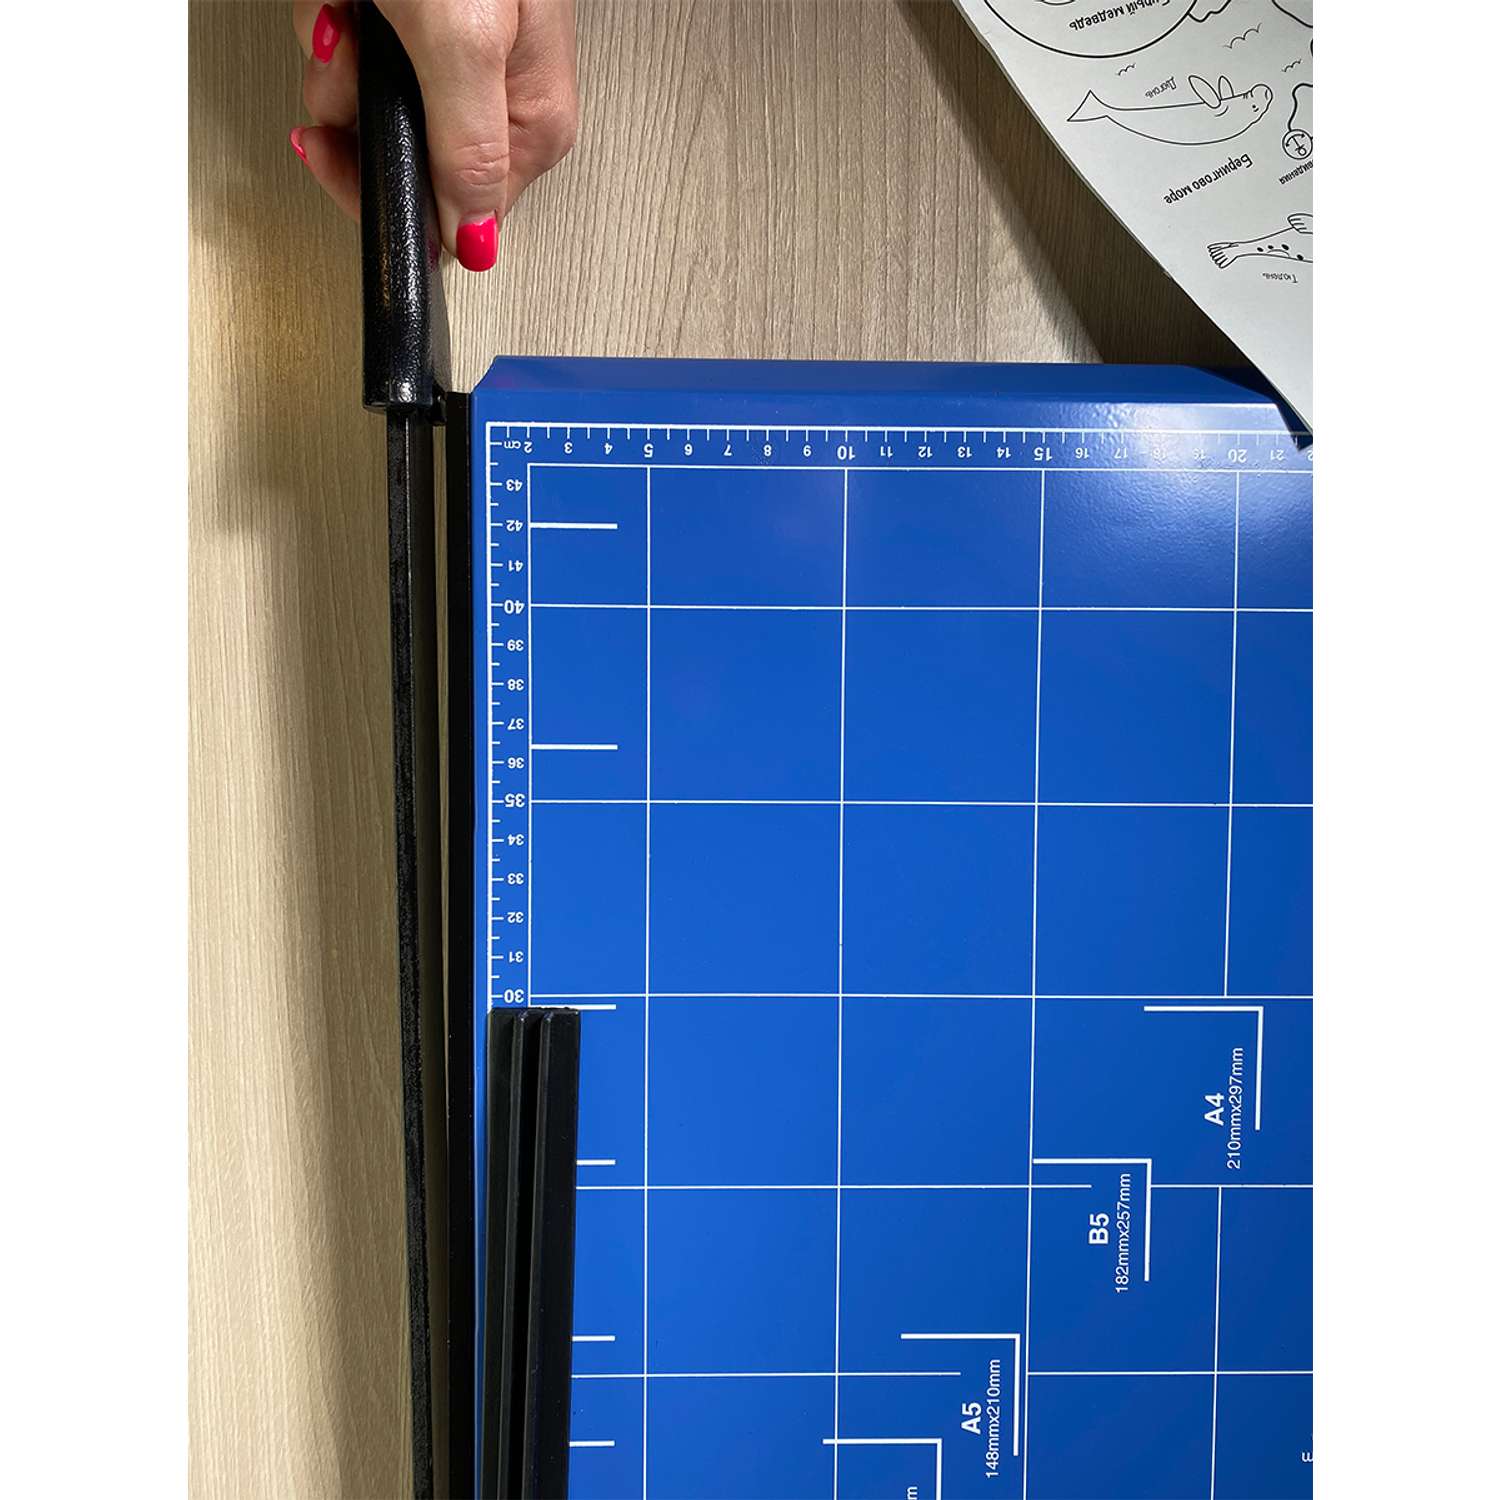 Резак для бумаги ГЕЛЕОС Сабельный РС A3-2 формат А3 режет до 10-11 листов металлическая основа - фото 9